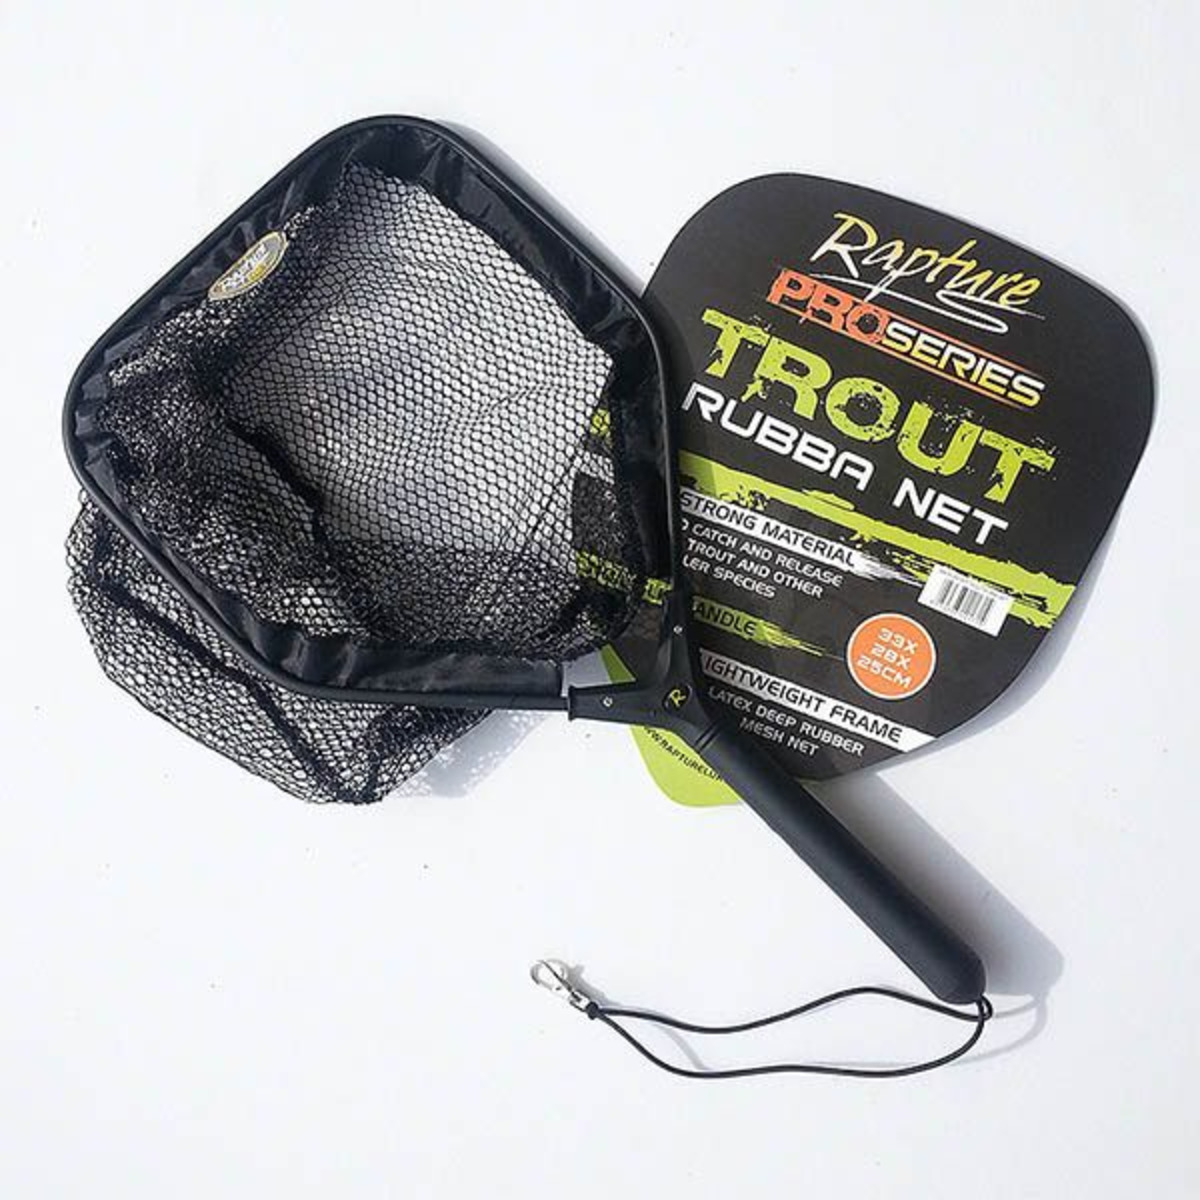 Rapture Rubber Net - Trout